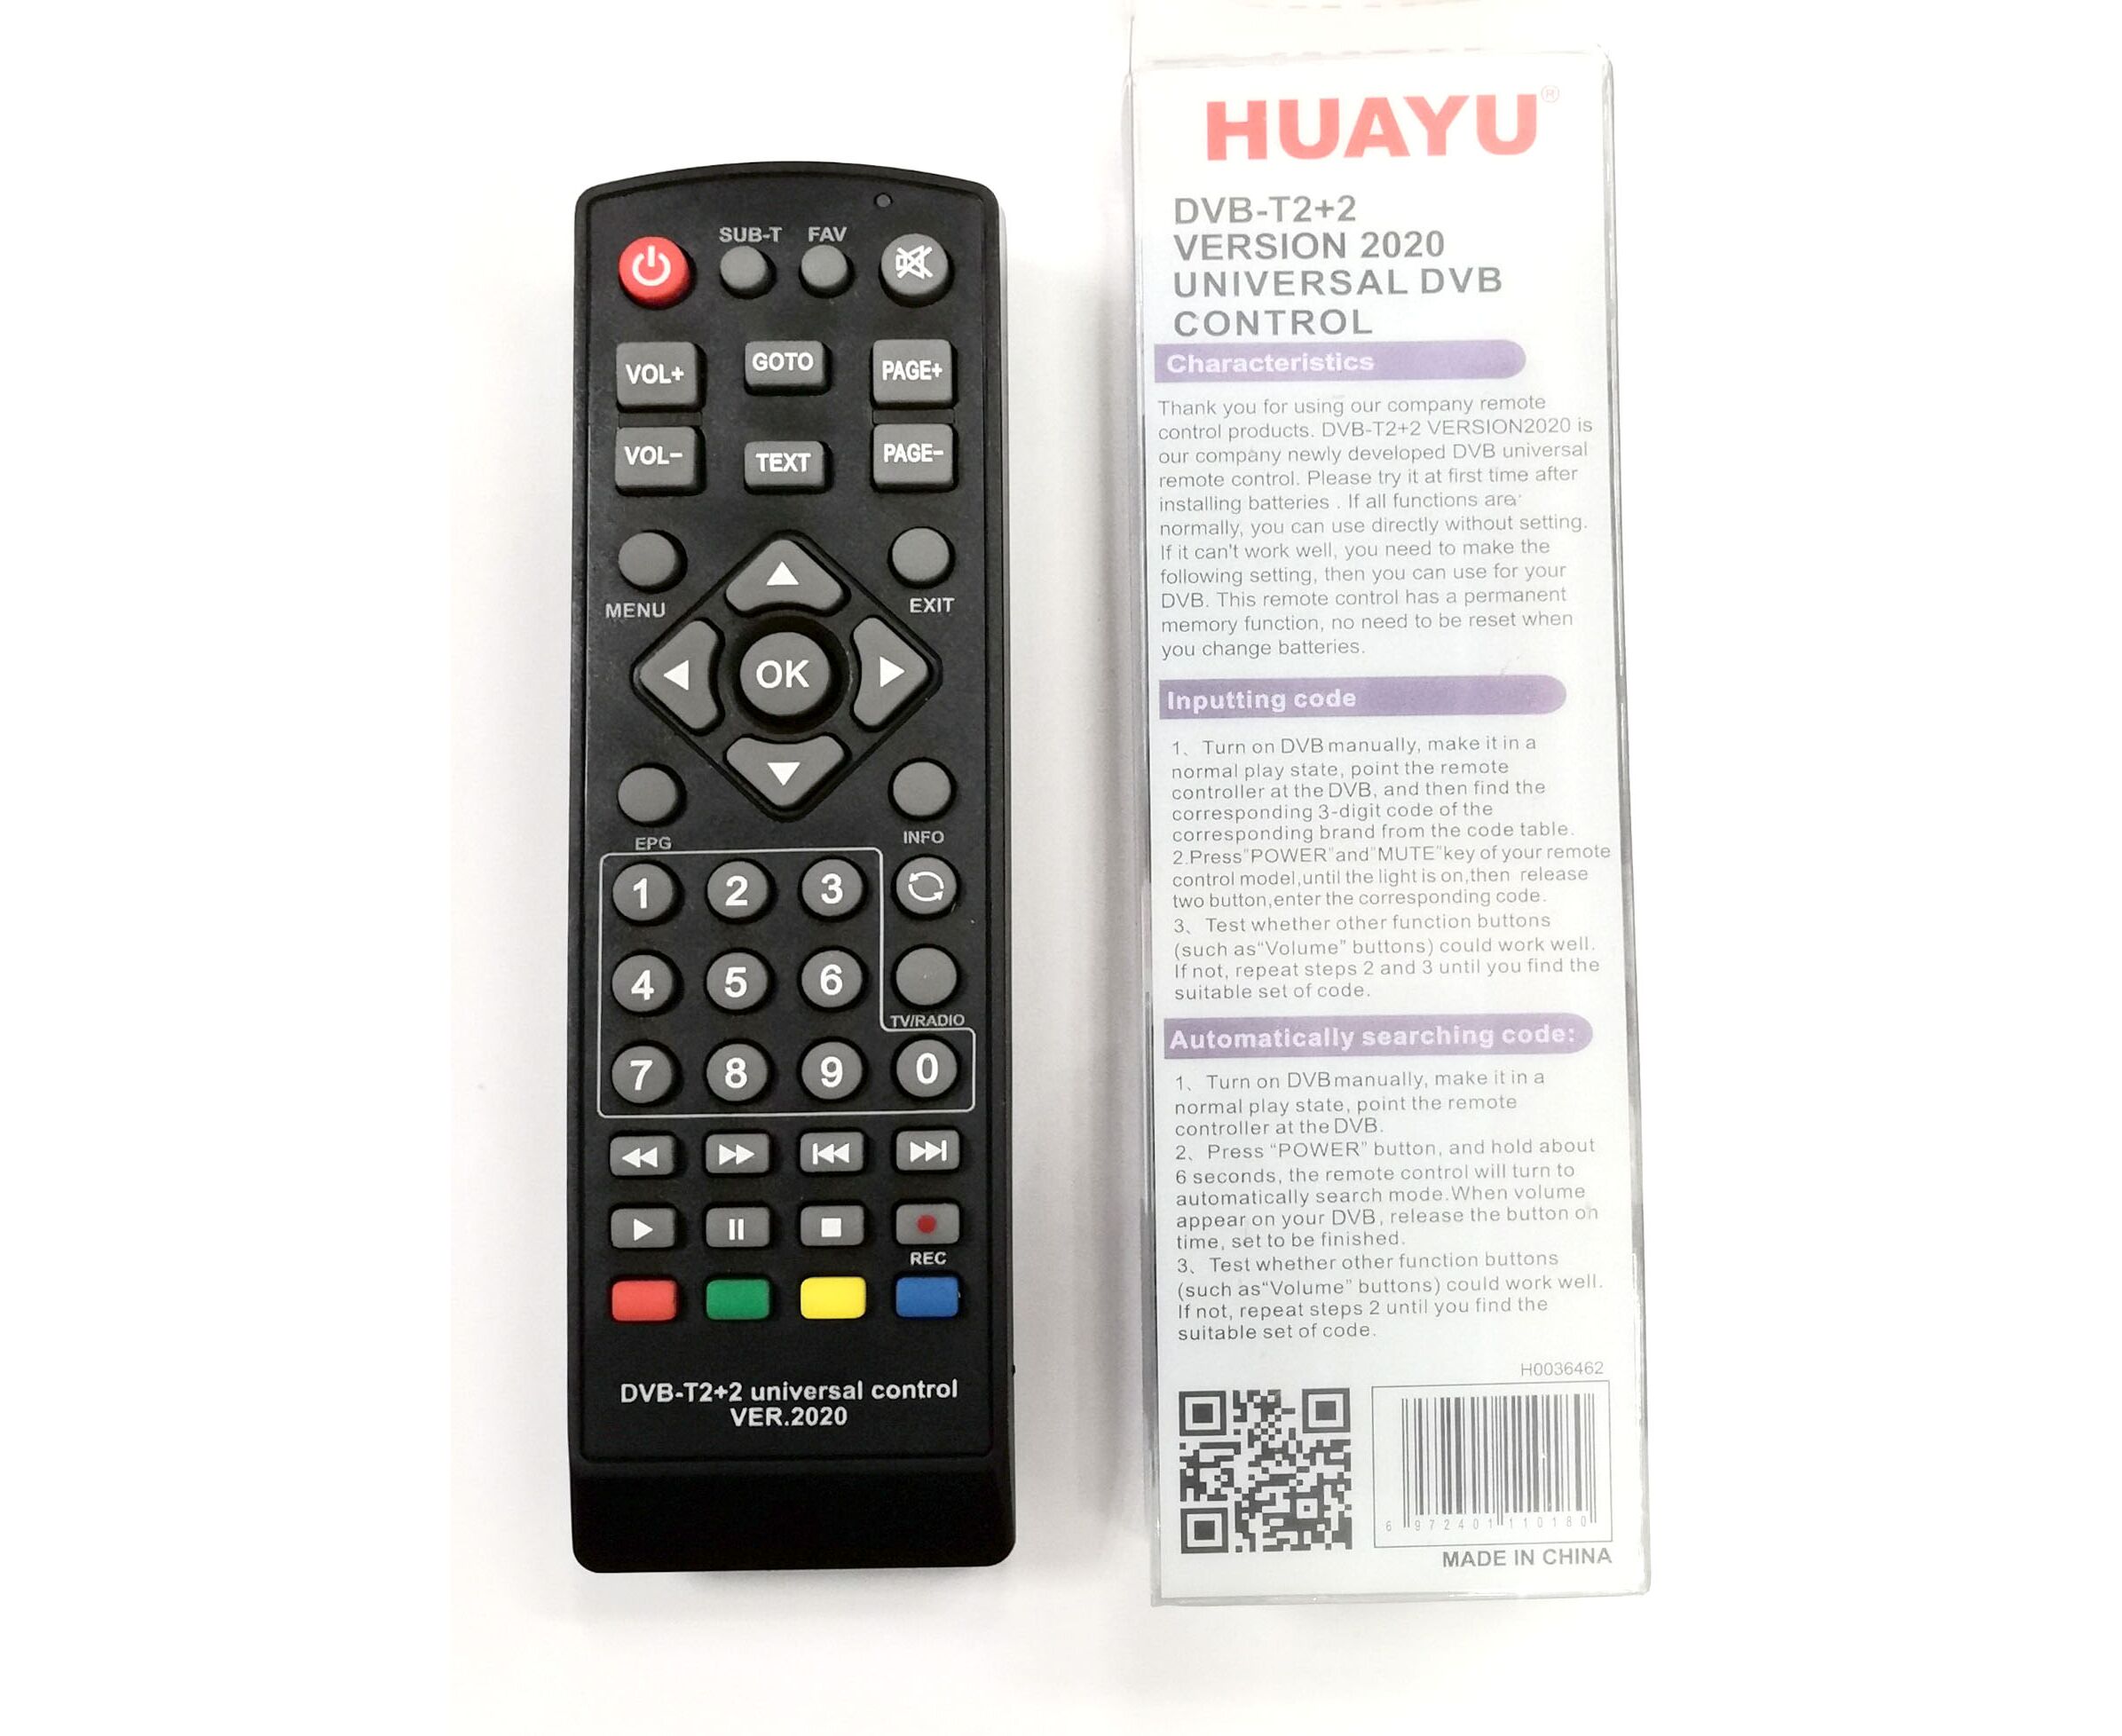 Настройка универсального пульта для приставки. Пульт универсальный Huayu для приставок DVB-t2+2 версия 2020. Универсальный пульт Huayu DVB-t2+t3. Универсальный пульт Huayu DVB-t2+2 ver.2020. Универсальный пульт Huayu DVB-t2+TV ver.2020.